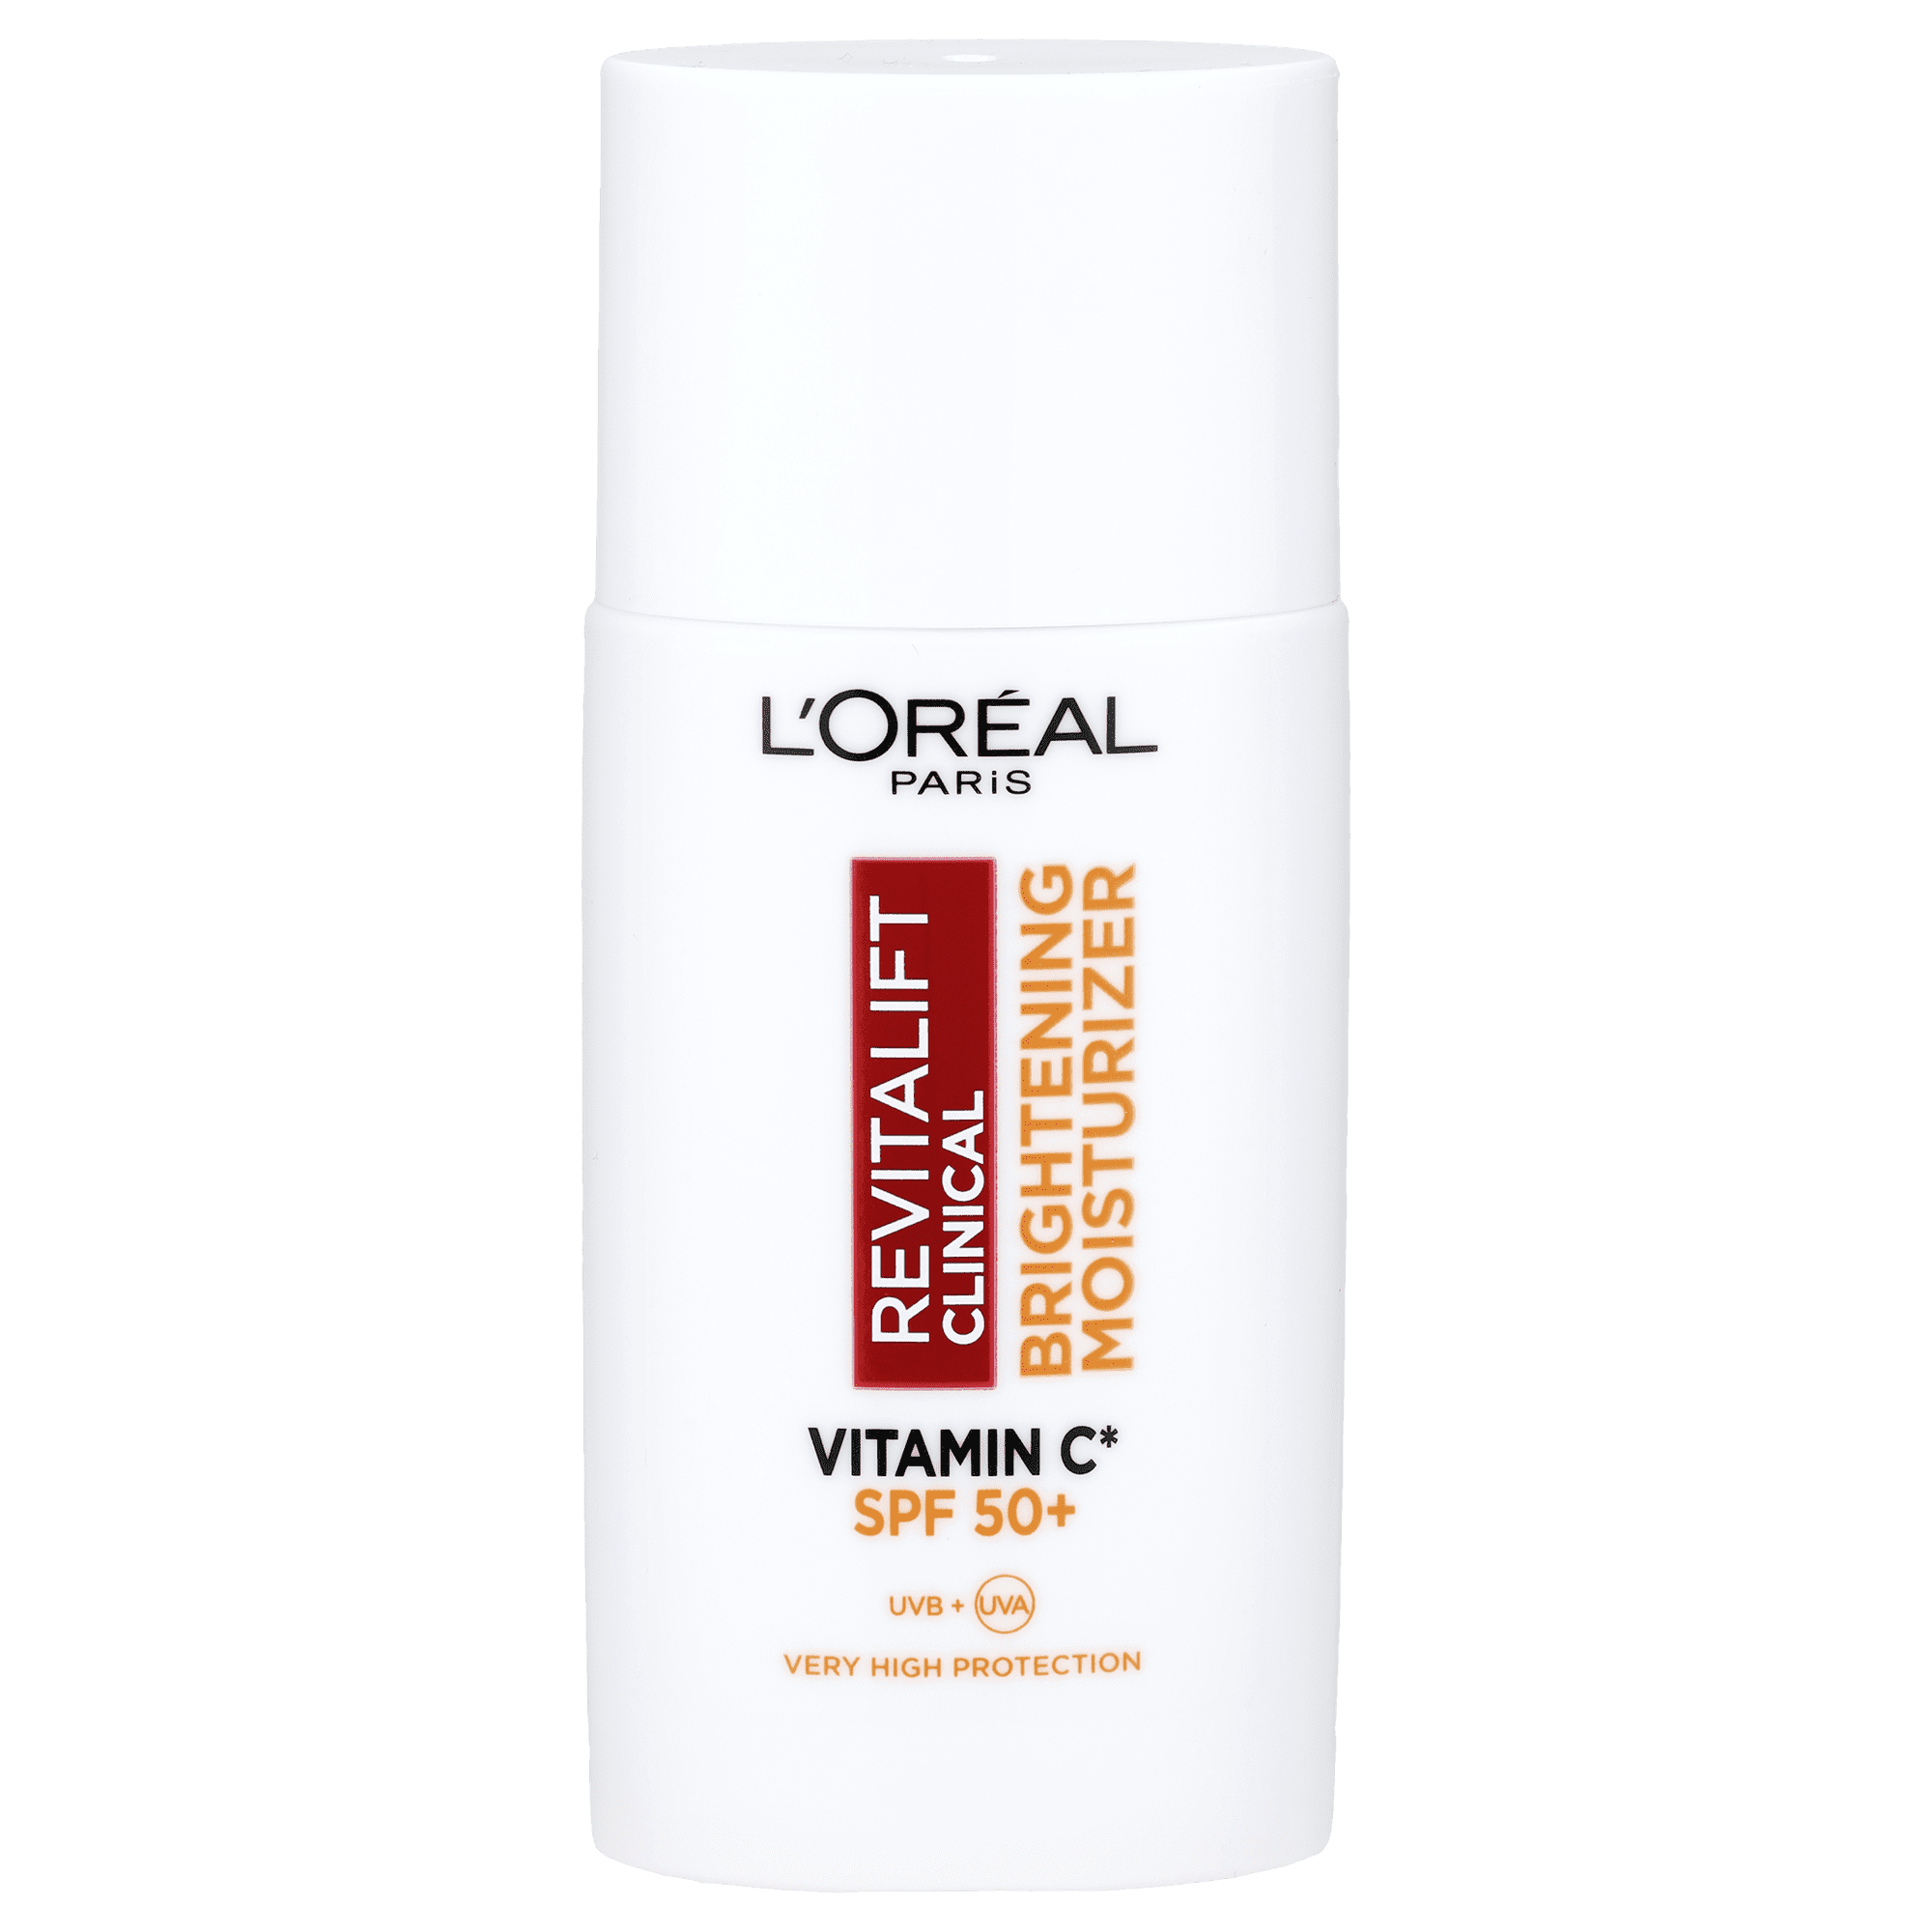 L'Oréal Paris Revitalift Clinical rozświetlający krem z witaminą C i SPF50  do twarzy na dzień, 50 ml | hebe.pl